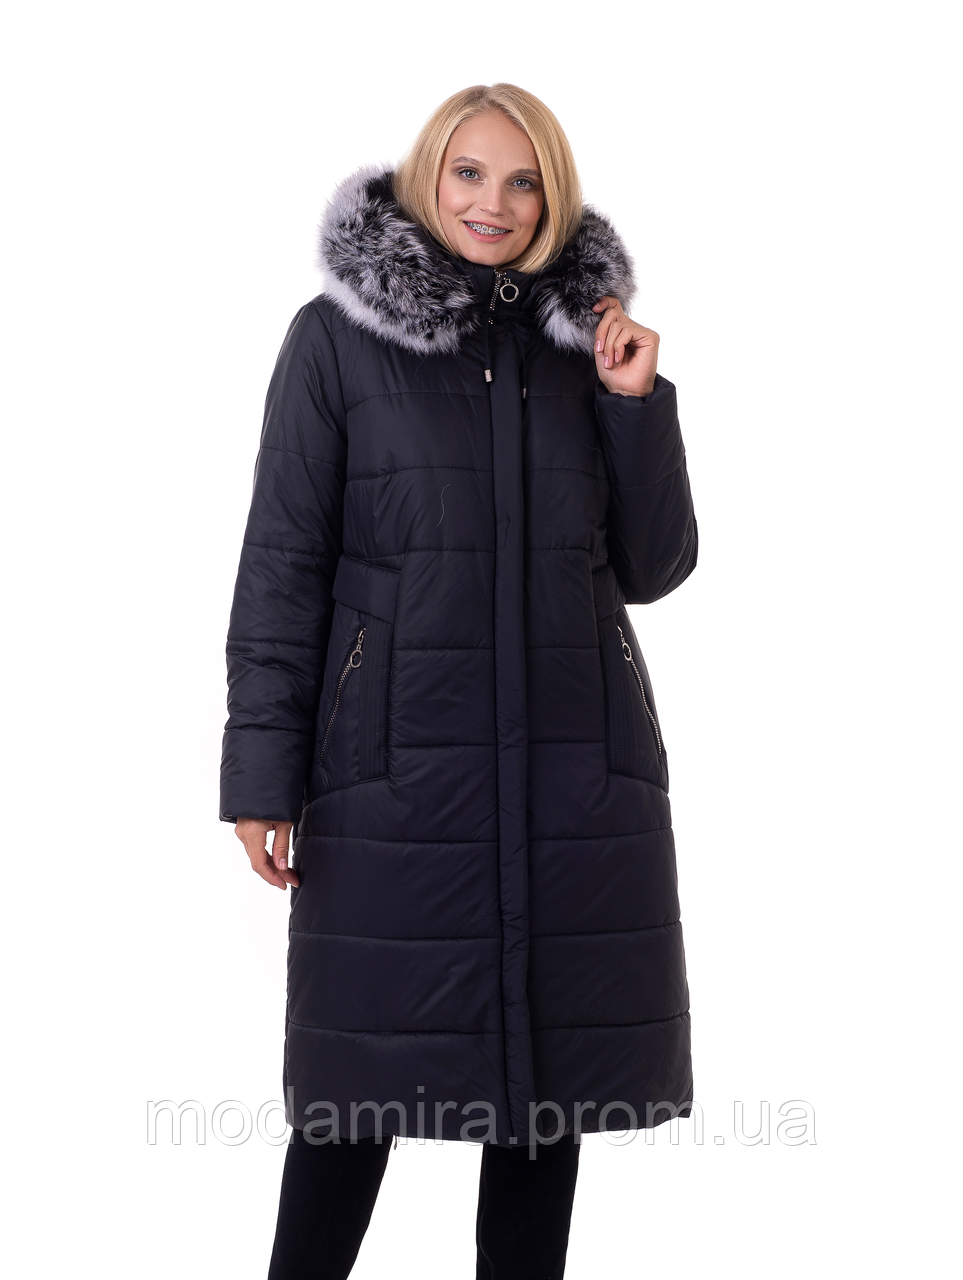 Жіноче зимове пальто з хутром. Жіночий зимовий пуховик. Жіноча зимова подовжена курточка Р — 48-66 чорний